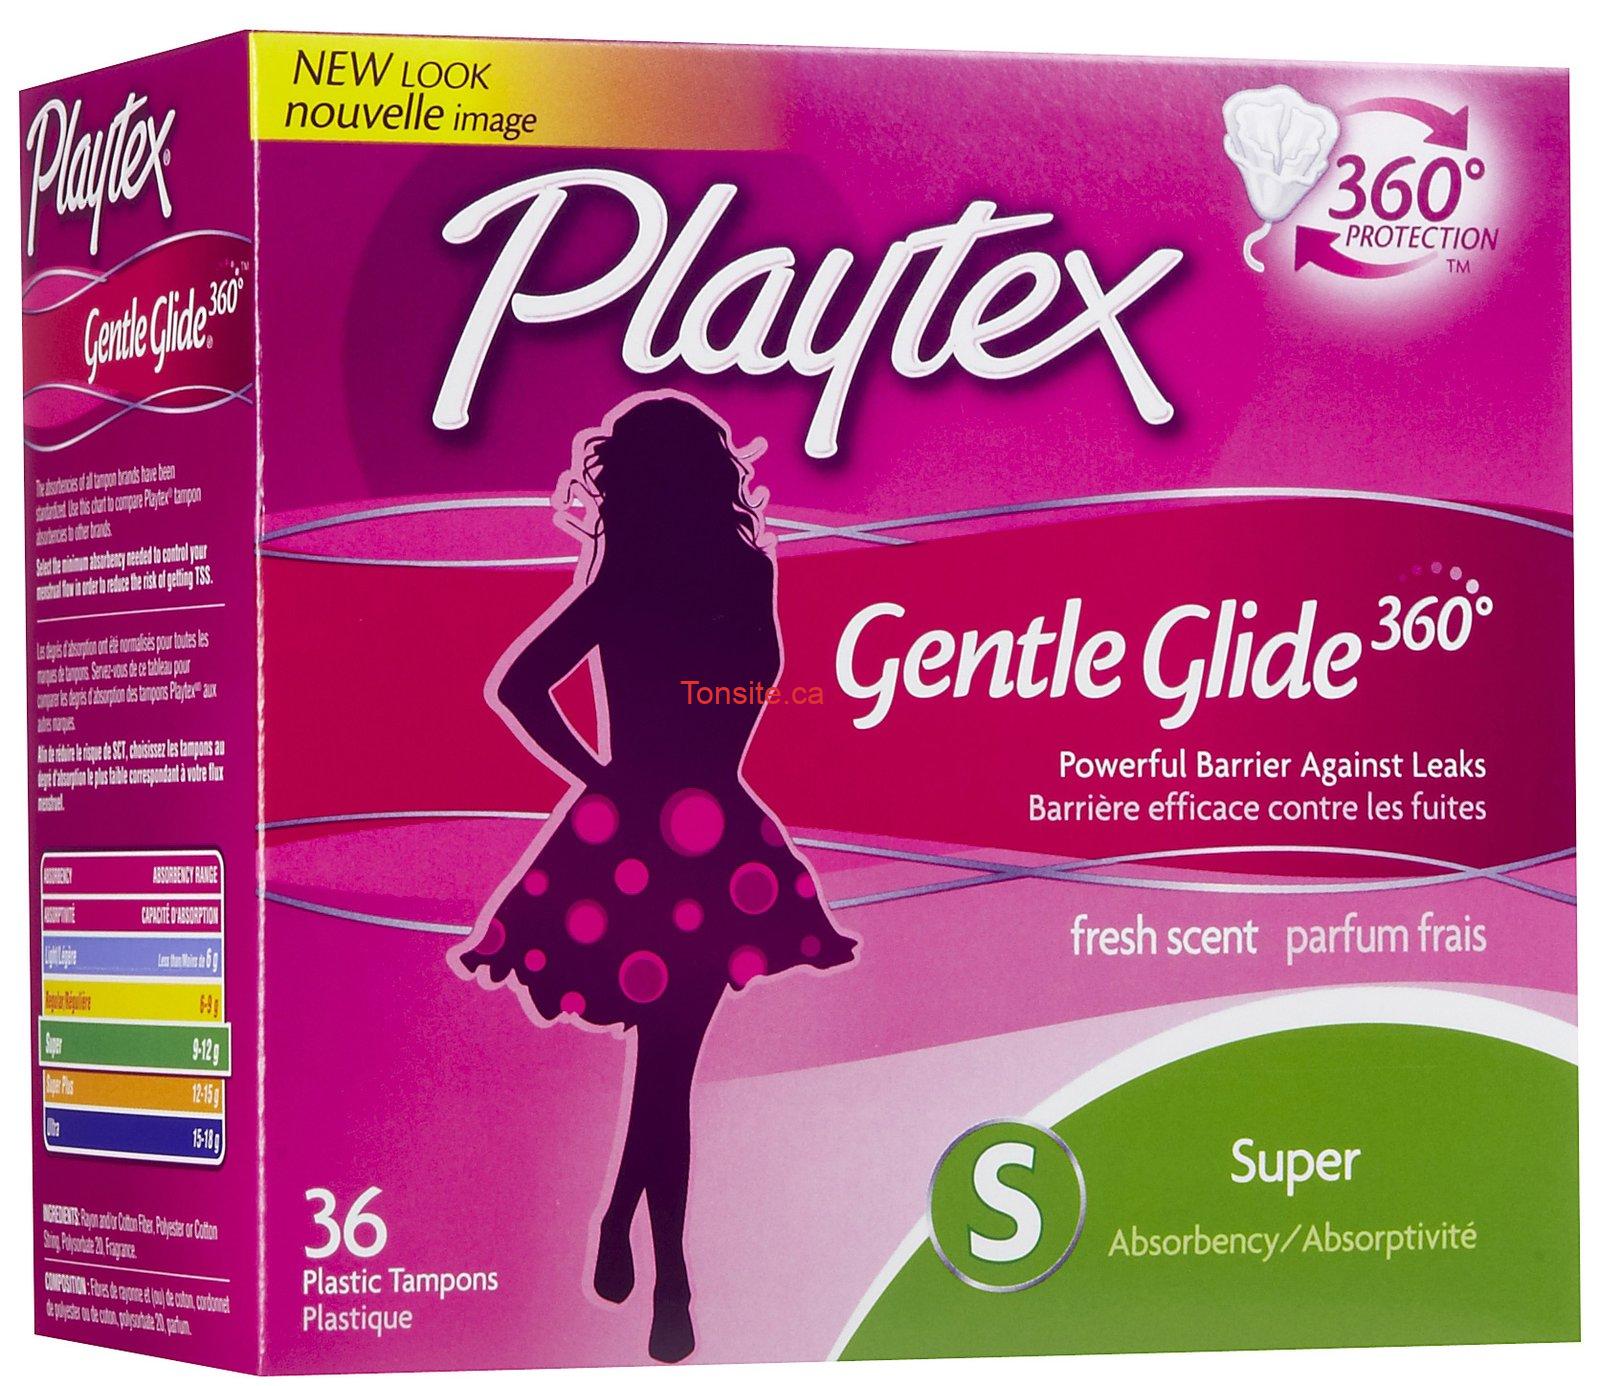 Tampons hygiéniques Playtex à 3.88$ au lieu de 6.88$ après coupon!, 